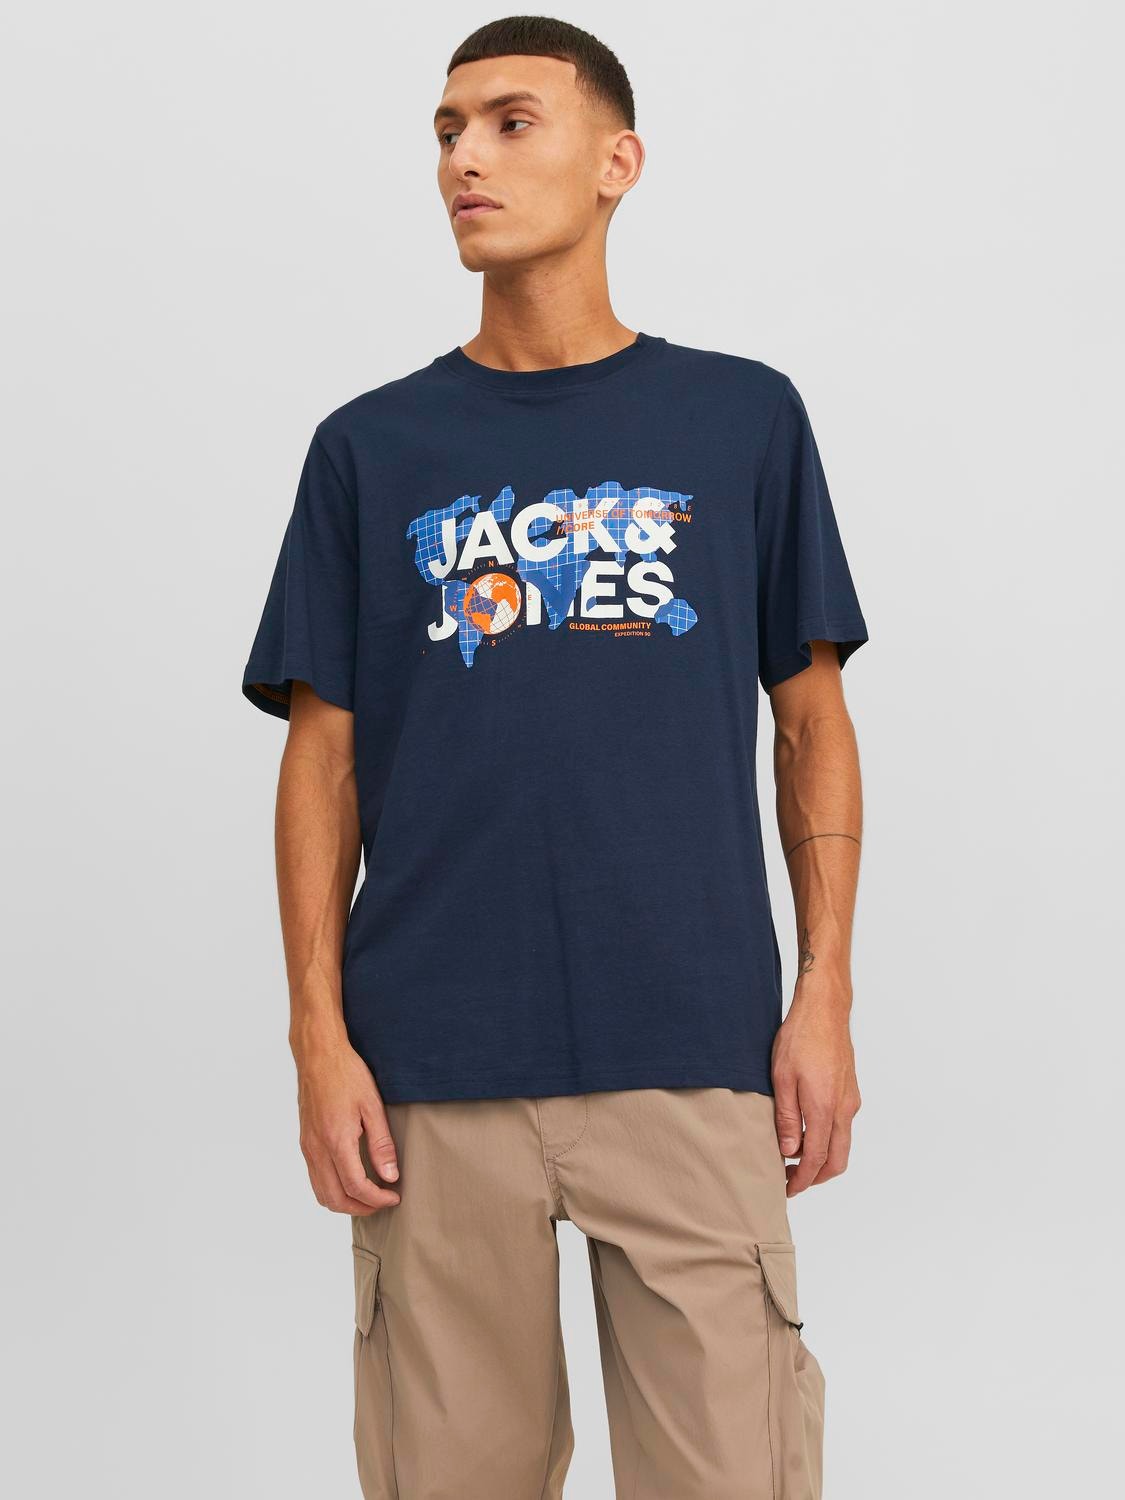 Jack & Jones Logo O-hals T-skjorte -Navy Blazer - 12240276